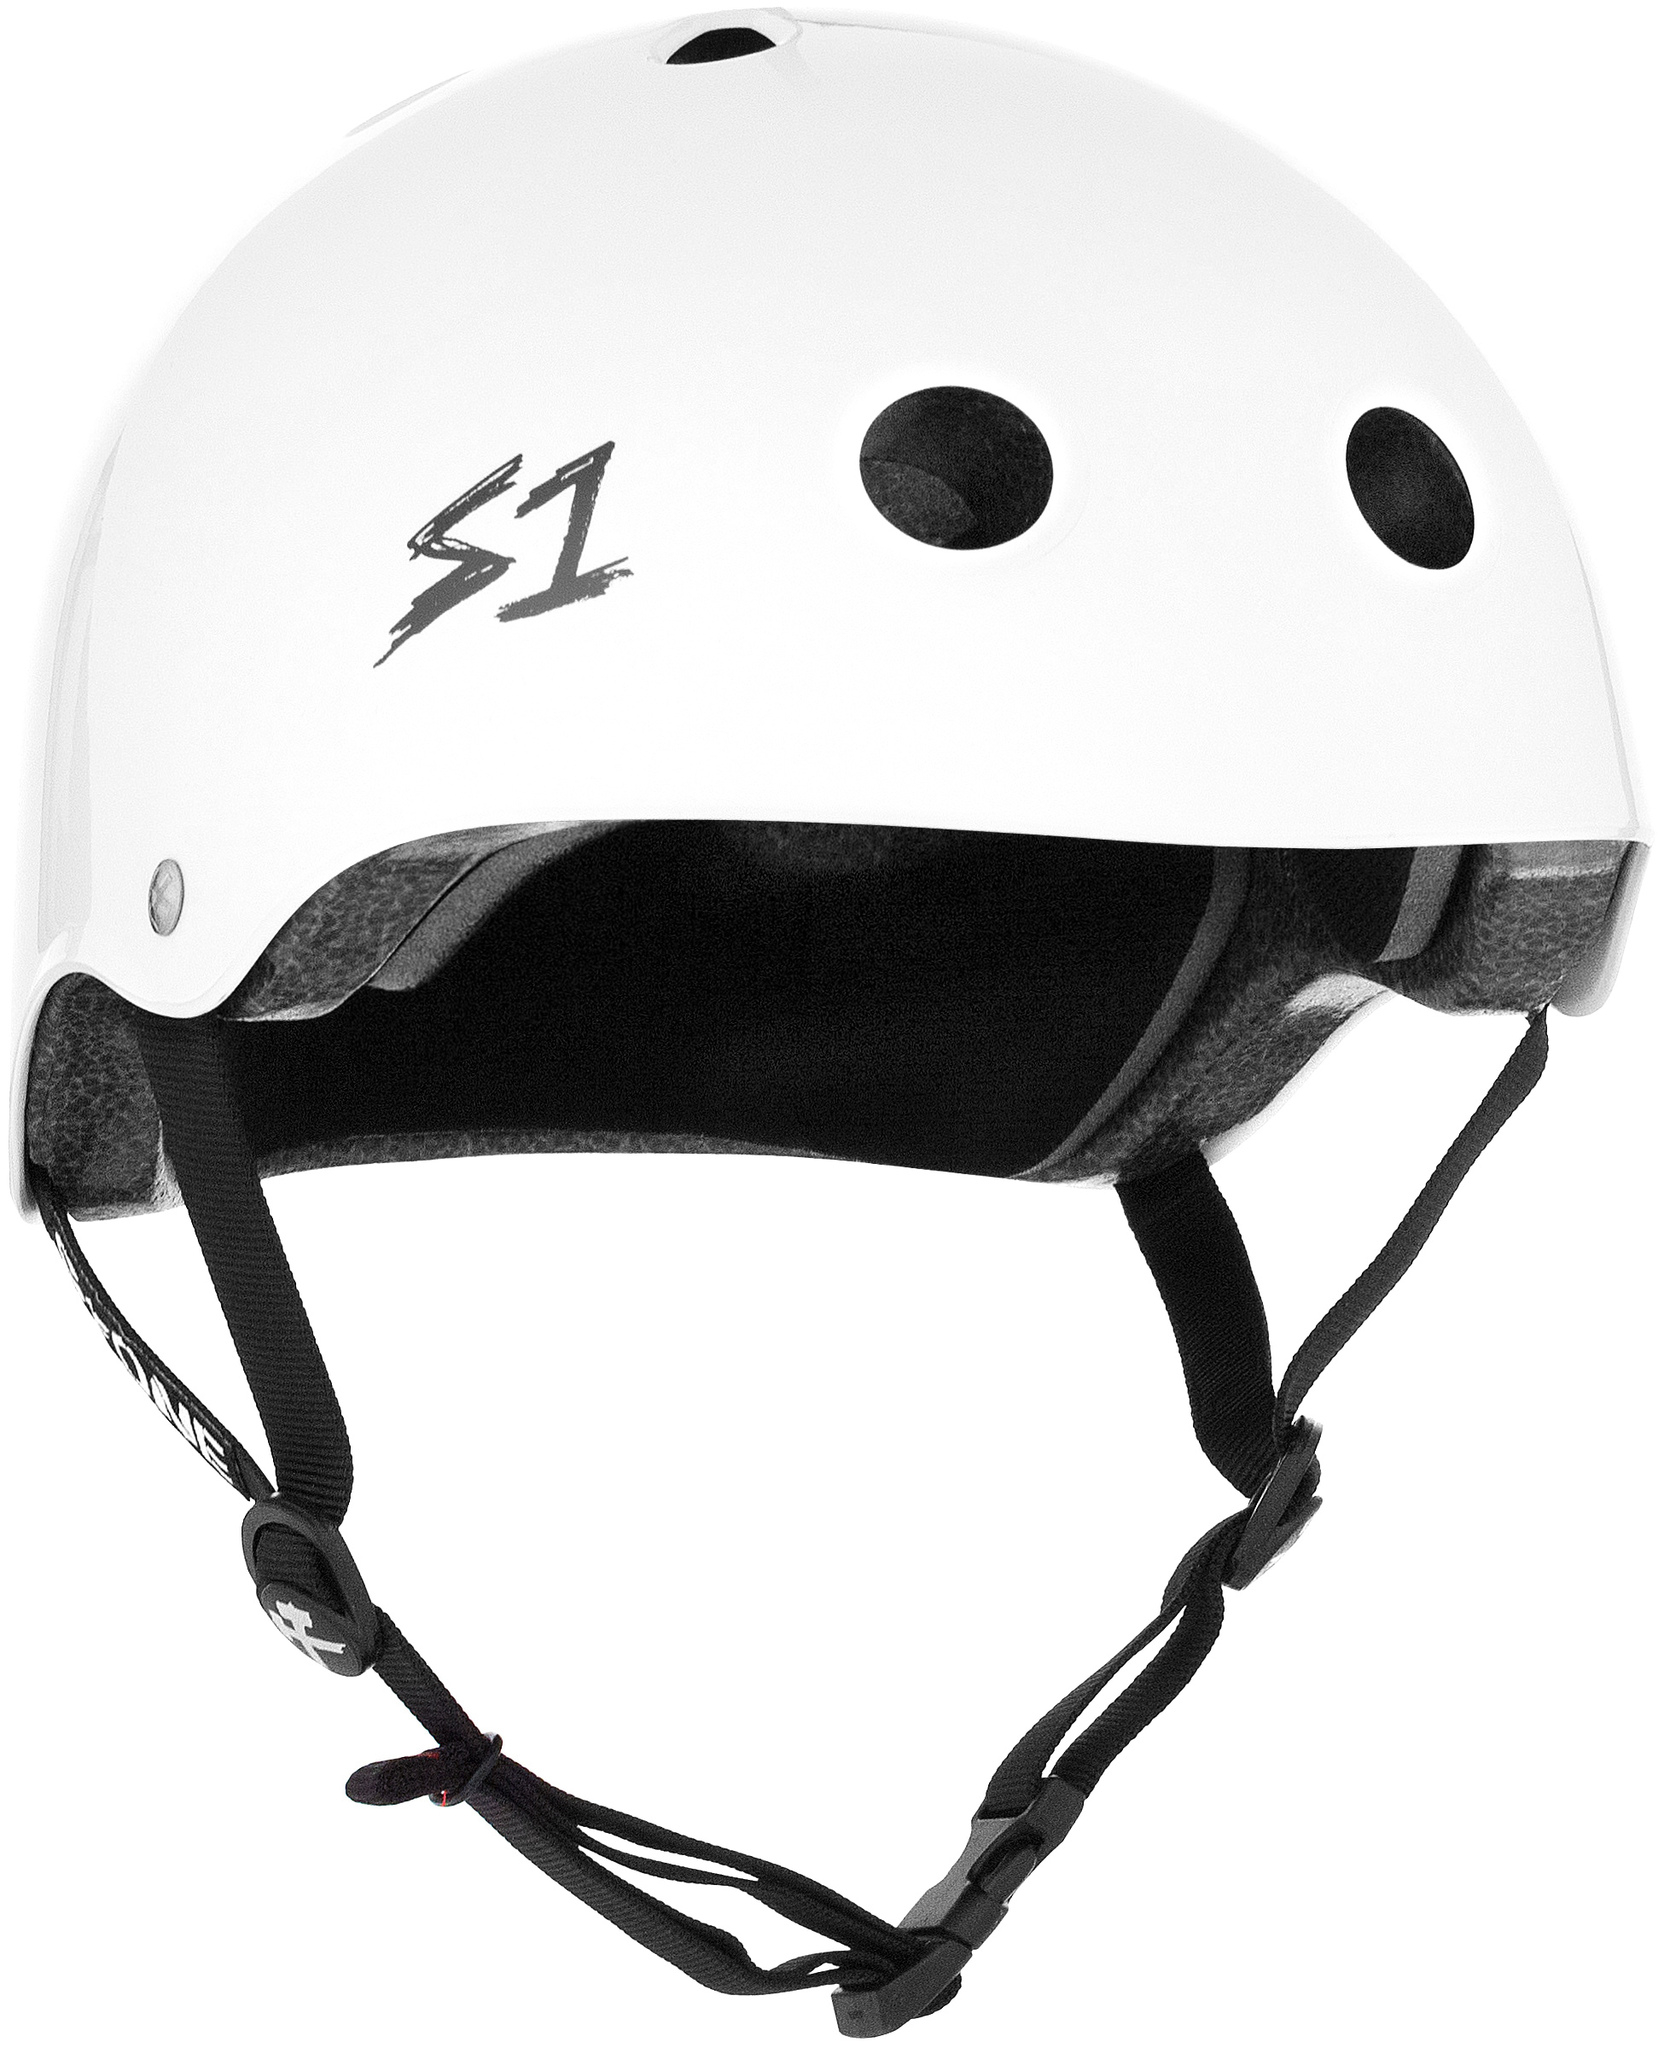 S-One V2 Mega Lifer Helmet